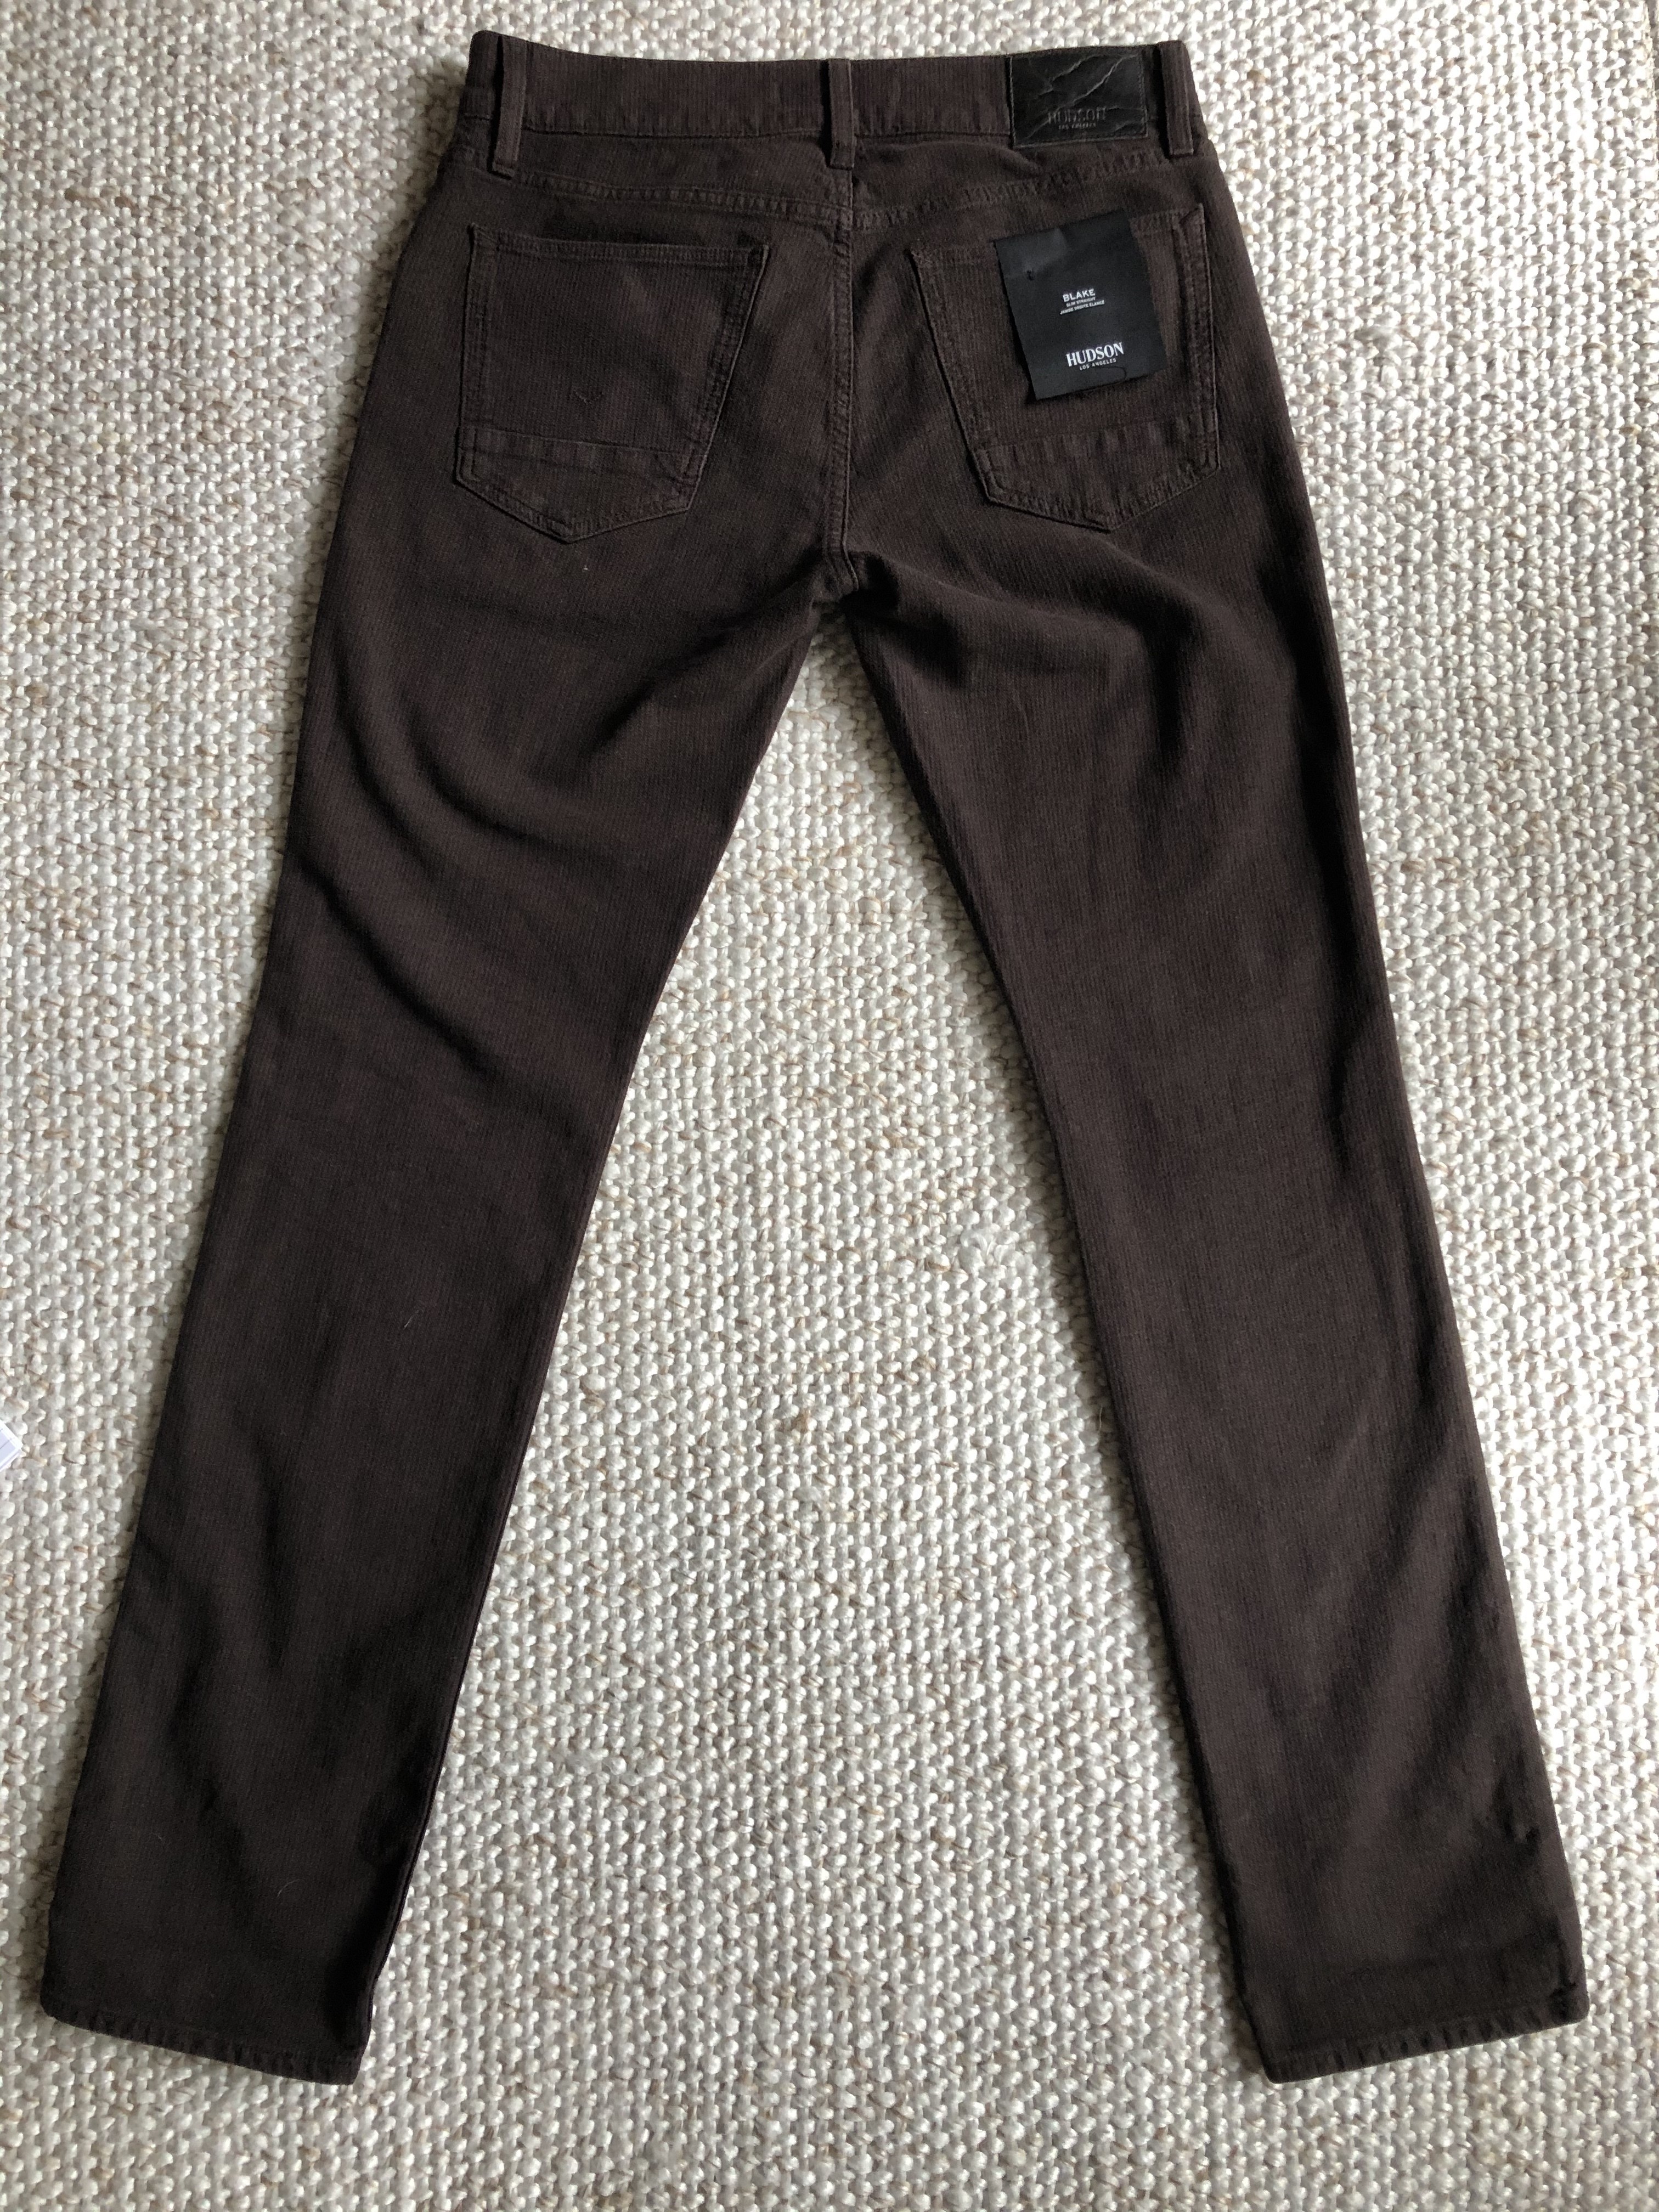 Hudson Jeans - NWT $195 - BLAKE SLIM STRAIGHT - 3